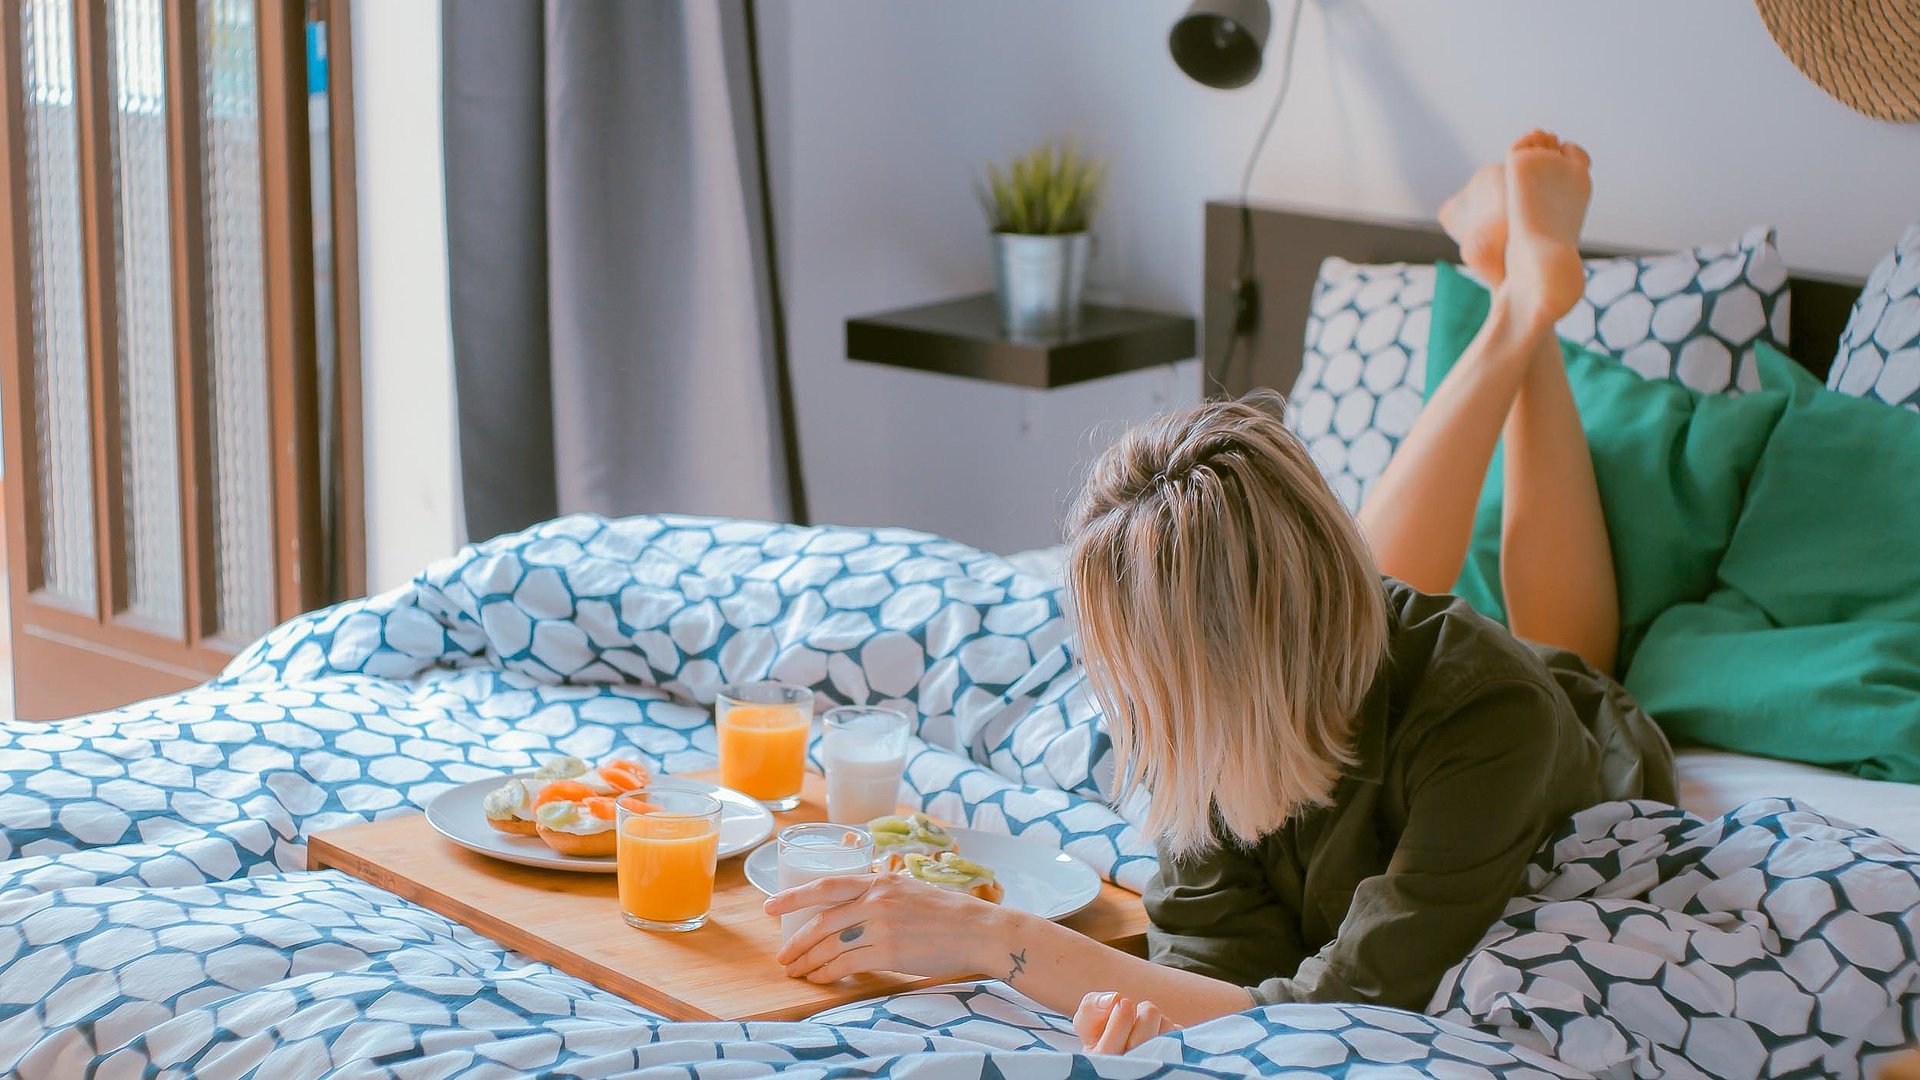 Unterkunft in Unterfranken - junge blonde Frau liegt im Bett neben einer Frühstücksplatte, gefüllt mit O-Saft, Milch und belegten Brötchen